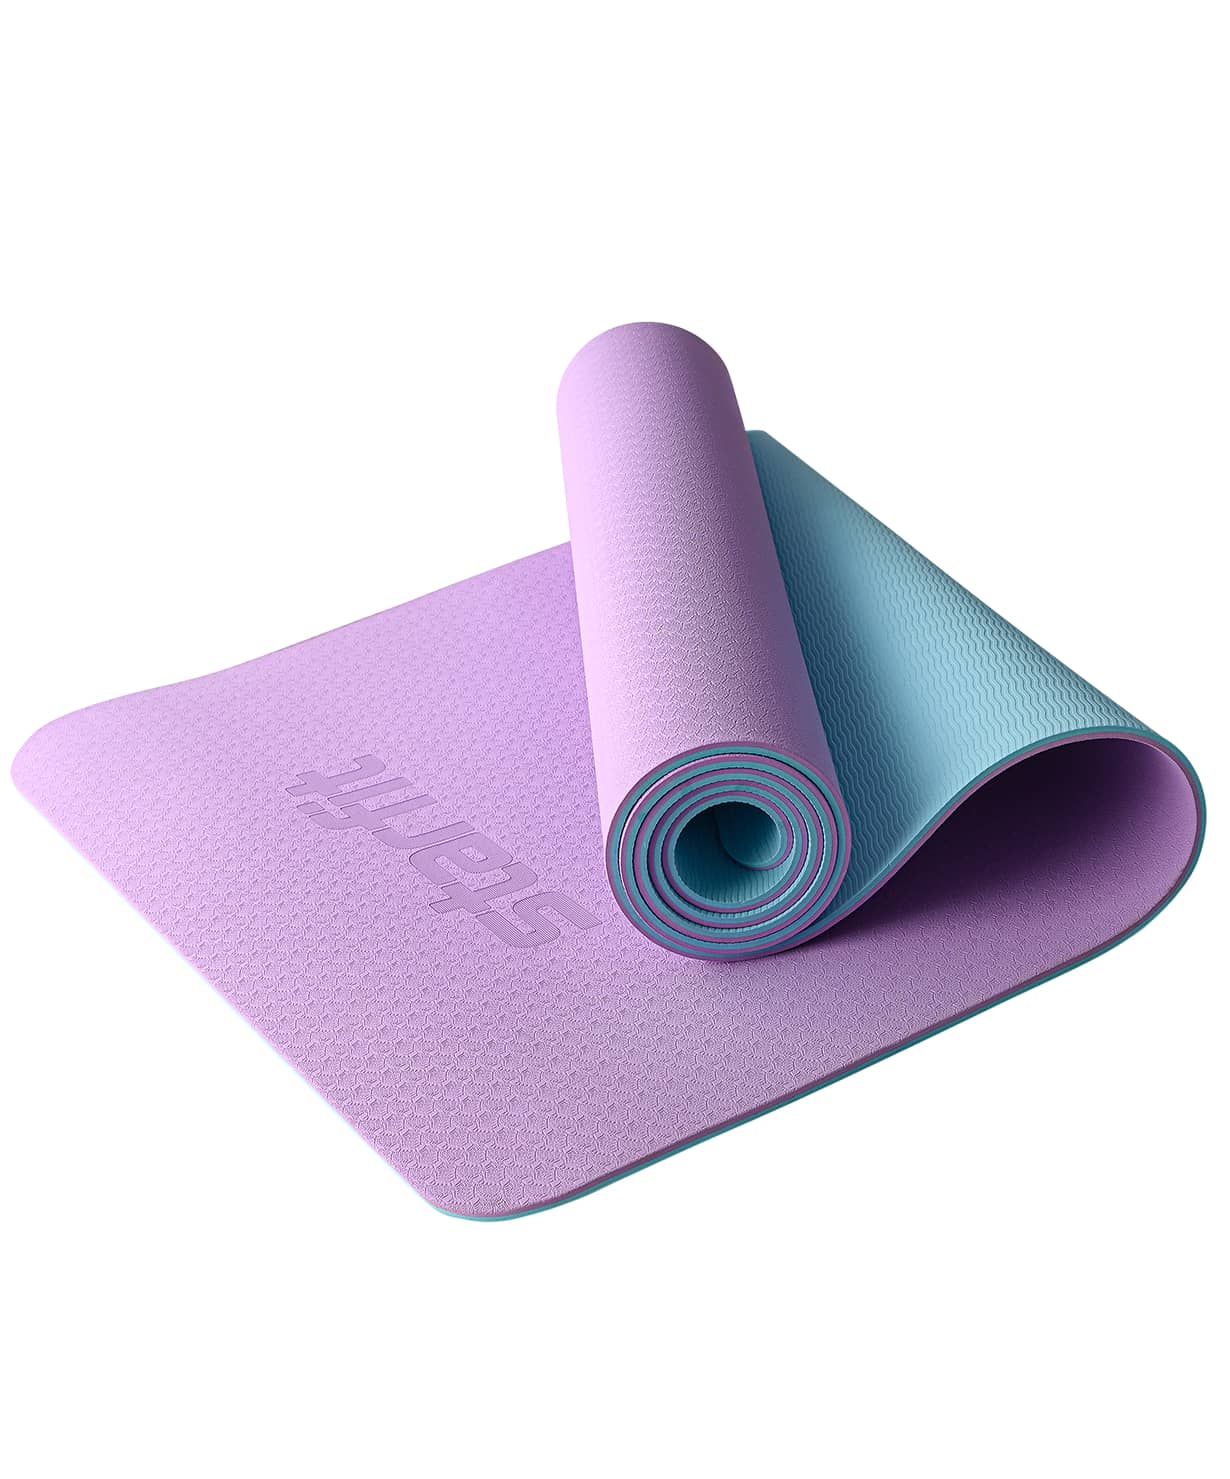 Коврик для йоги и фитнеса Star Fit FM-201, TPE, 183x61x0,6 см, фиолетовый пастель/синий пастель 1230_1479